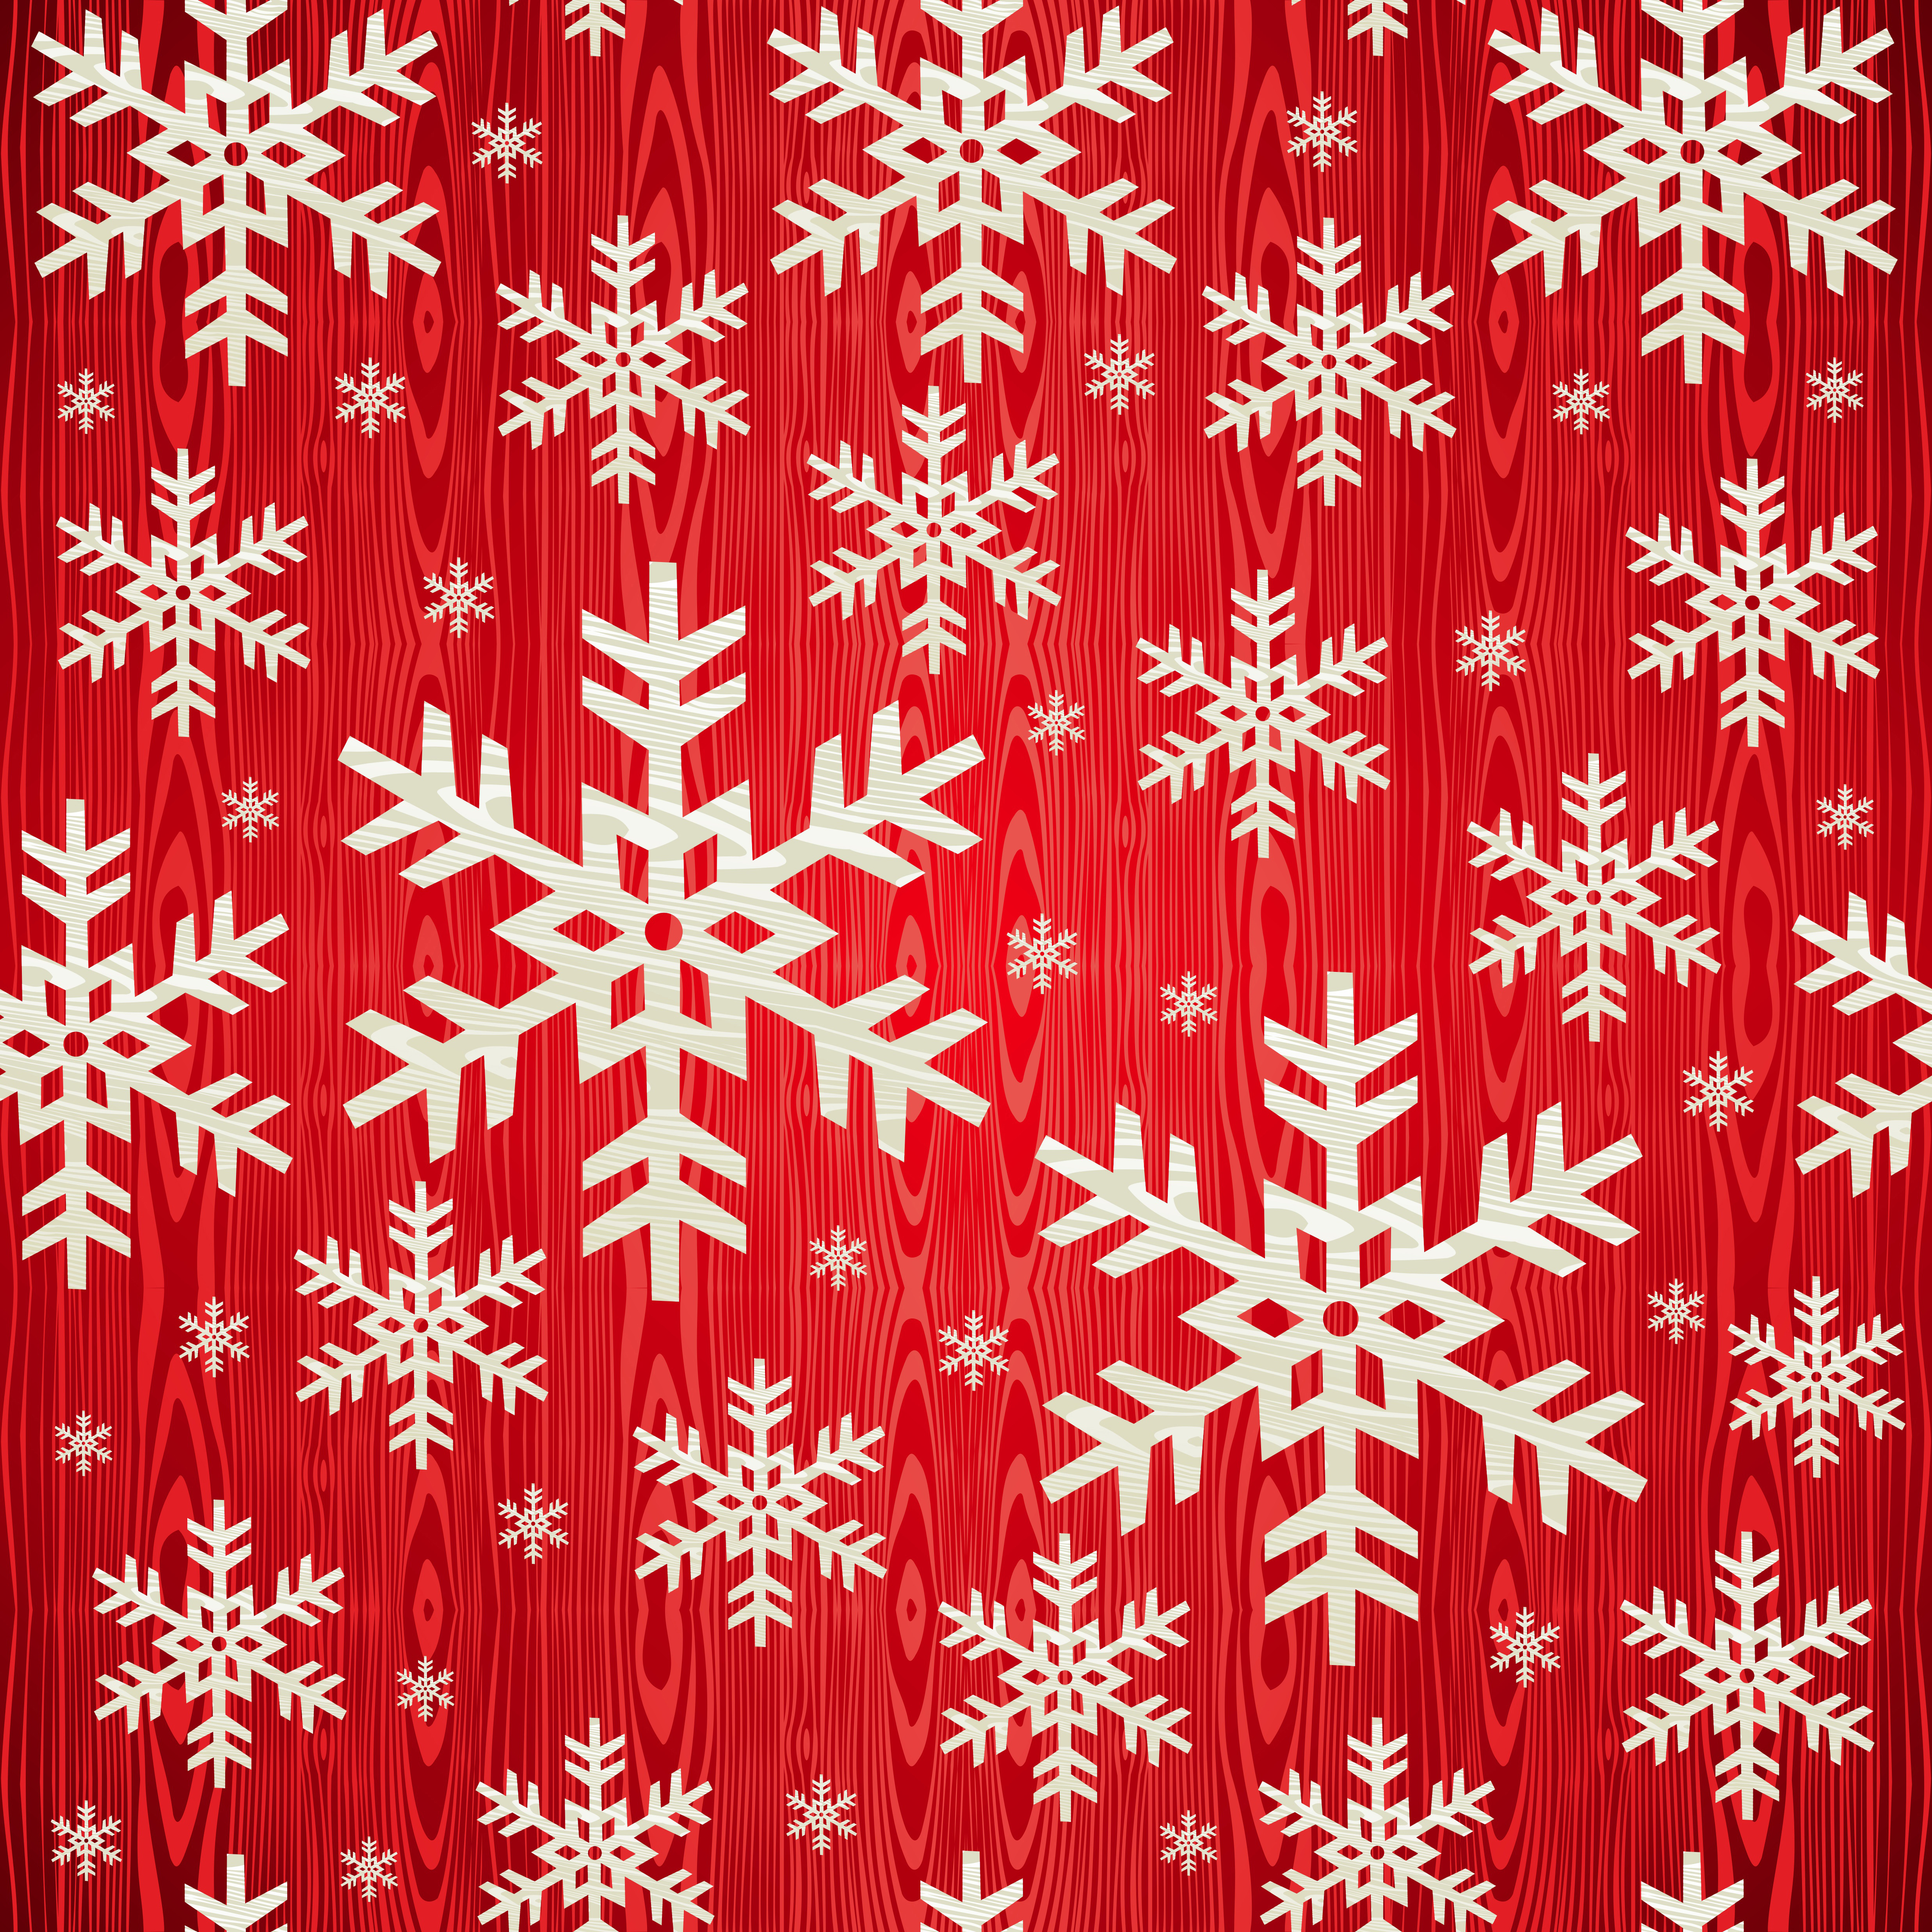 Паттерны из снежинок - Векторный клипарт | Snowflakes patterns - Stock